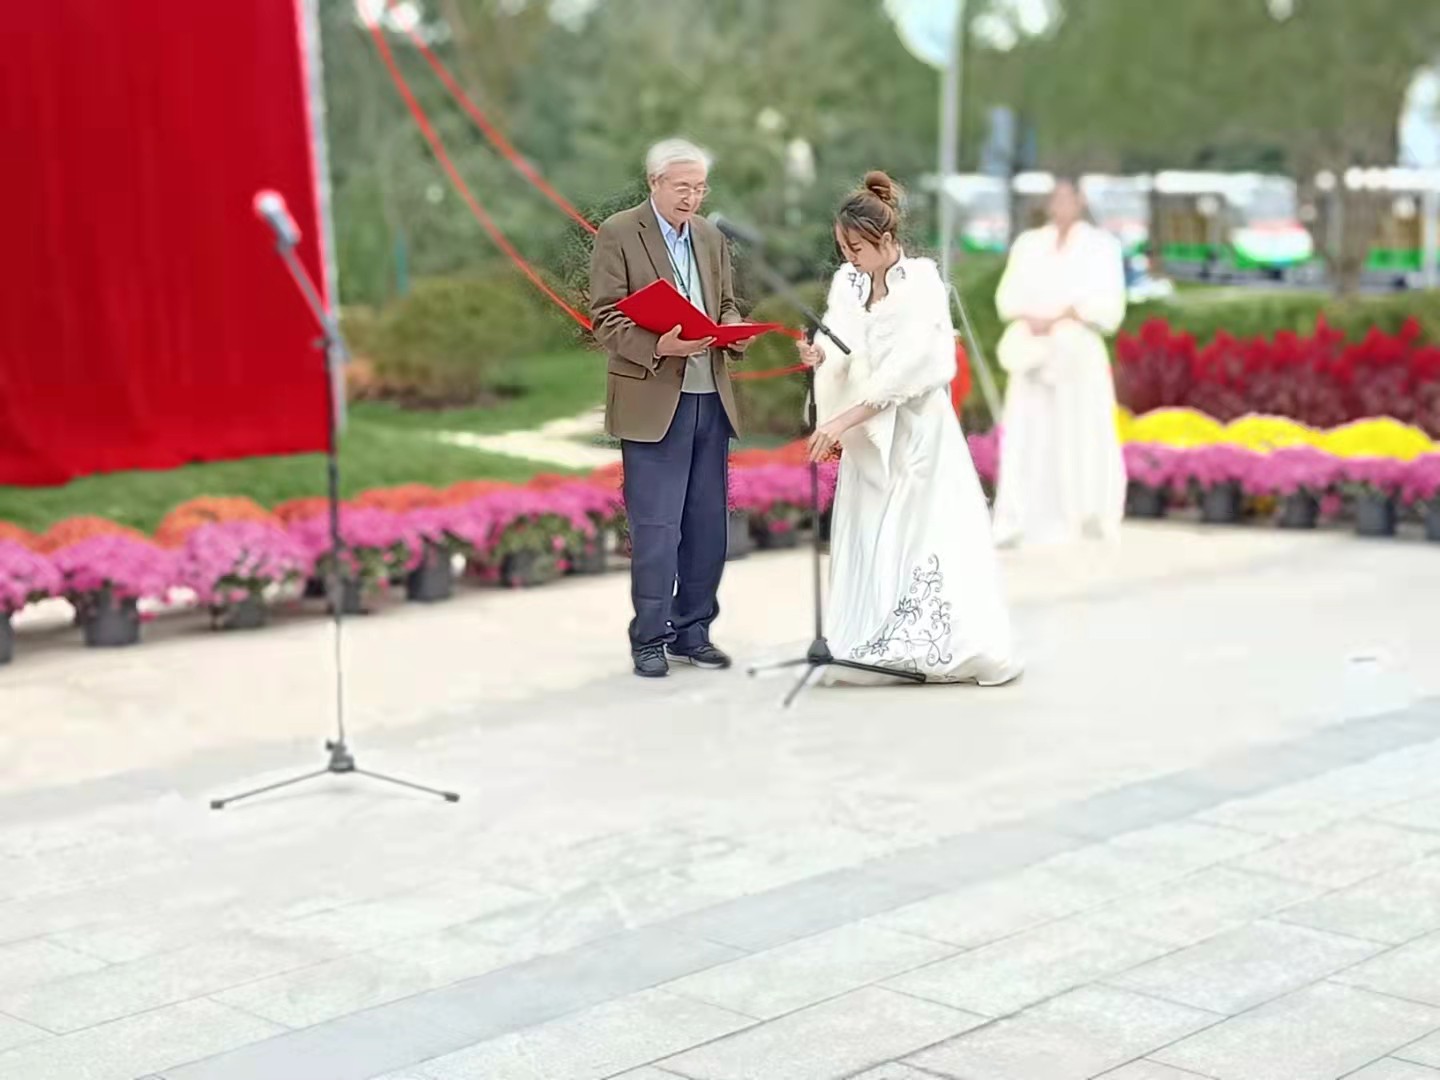 浙江宁波植物园钟观光公雕像开光典礼